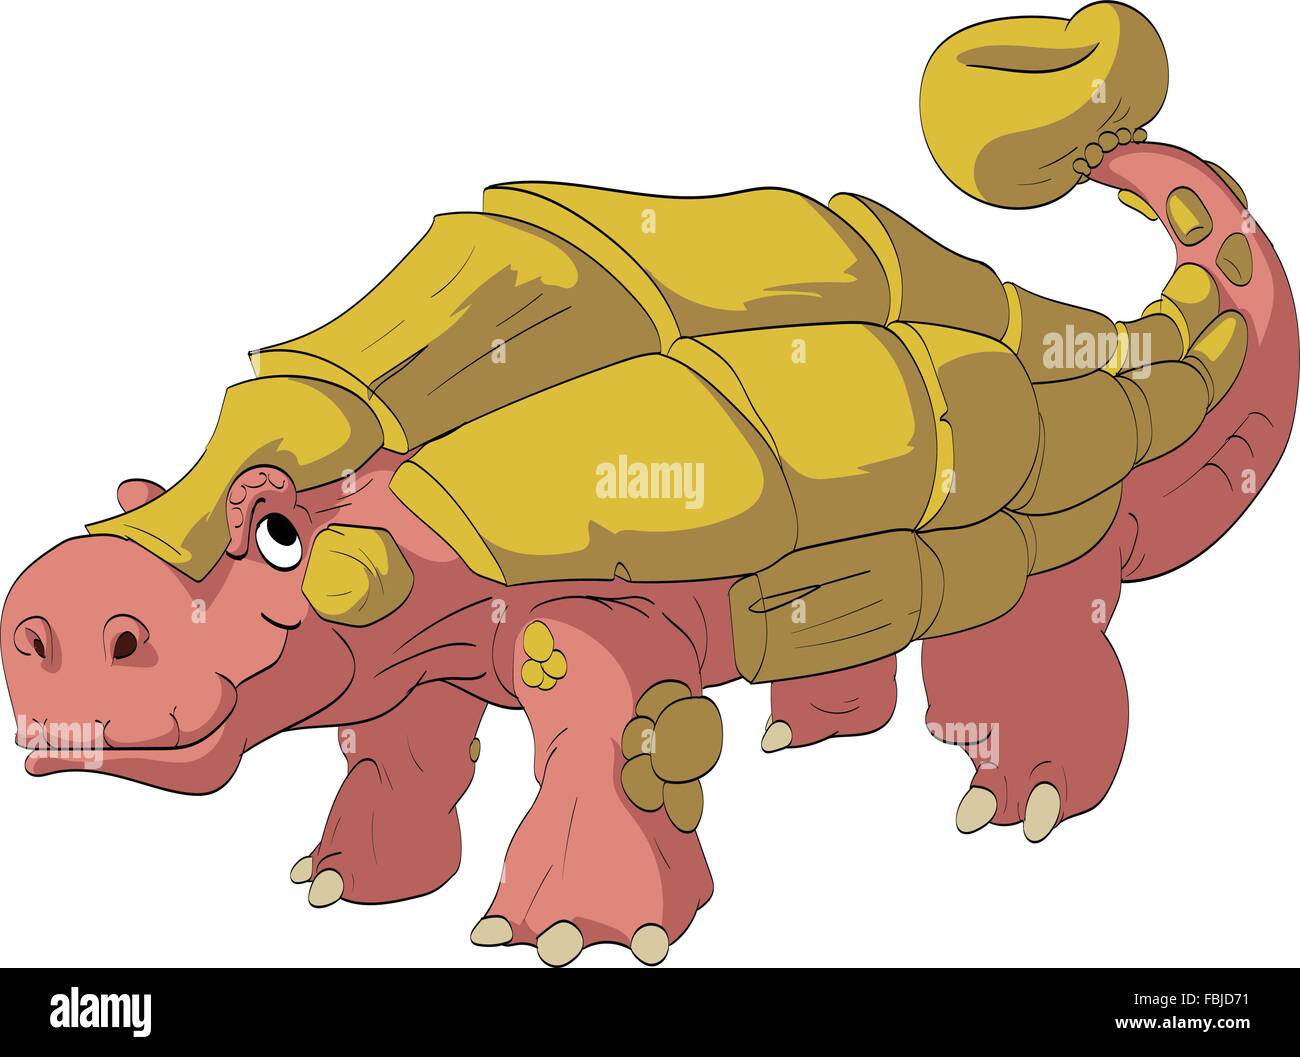 Colorata illustrazione vettoriale di un cartoon Ankylosaur. Tipo di dinosauro erbivoro con armatura di tufo, protezione contro i predatori. Illustrazione Vettoriale